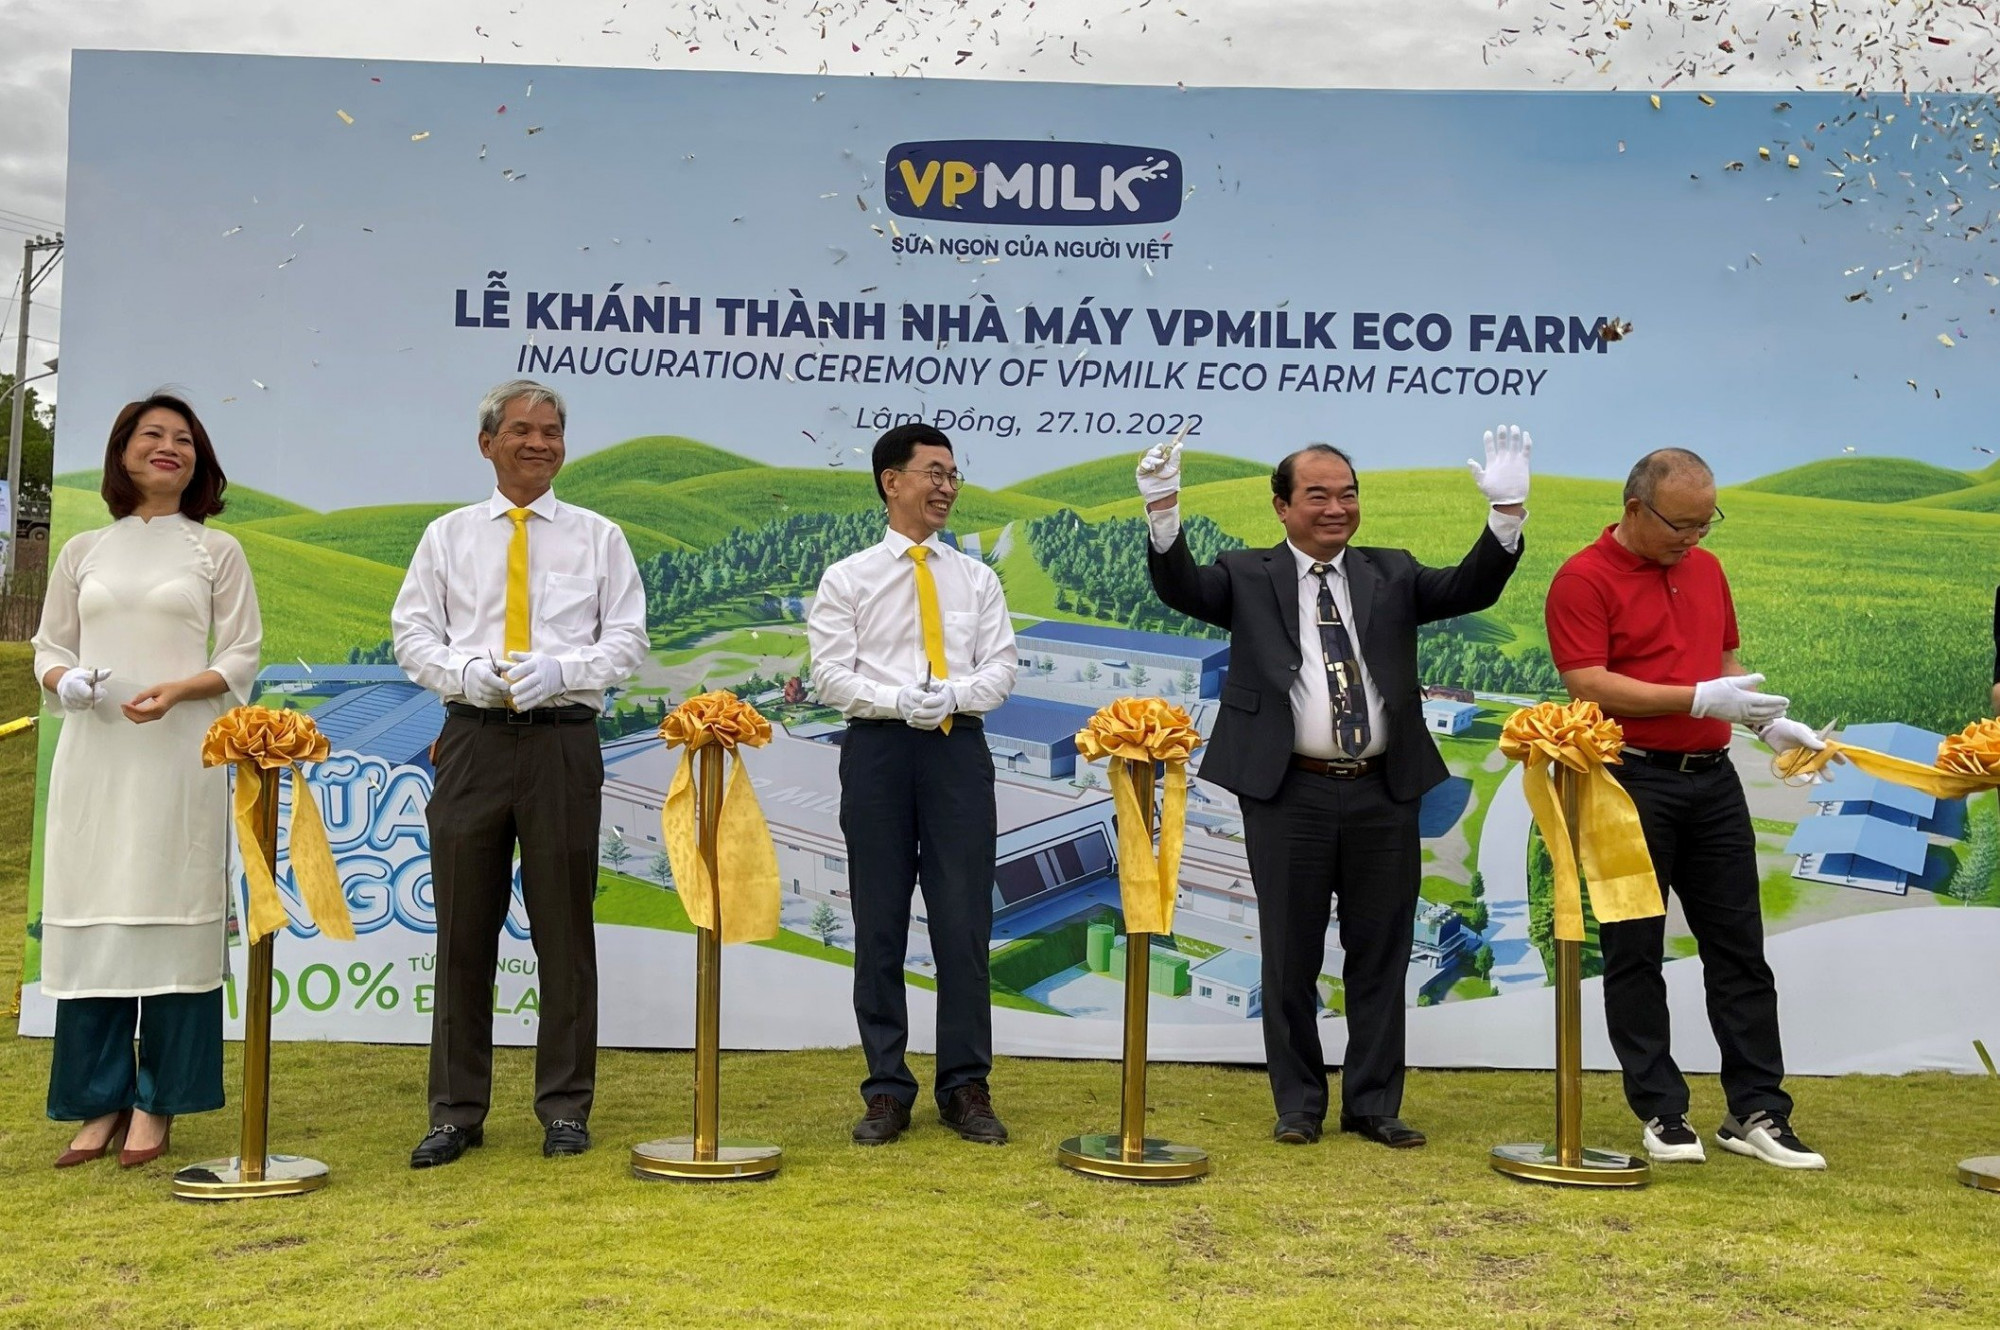 Ông Park Hang Seo (người mặc áo đỏ) cùng đại diện chính quyền địa phương và lãnh đạo VPMilk cắt băng khánh thành Nhà máy VPMilk Eco Farm - Ảnh: VPMilk